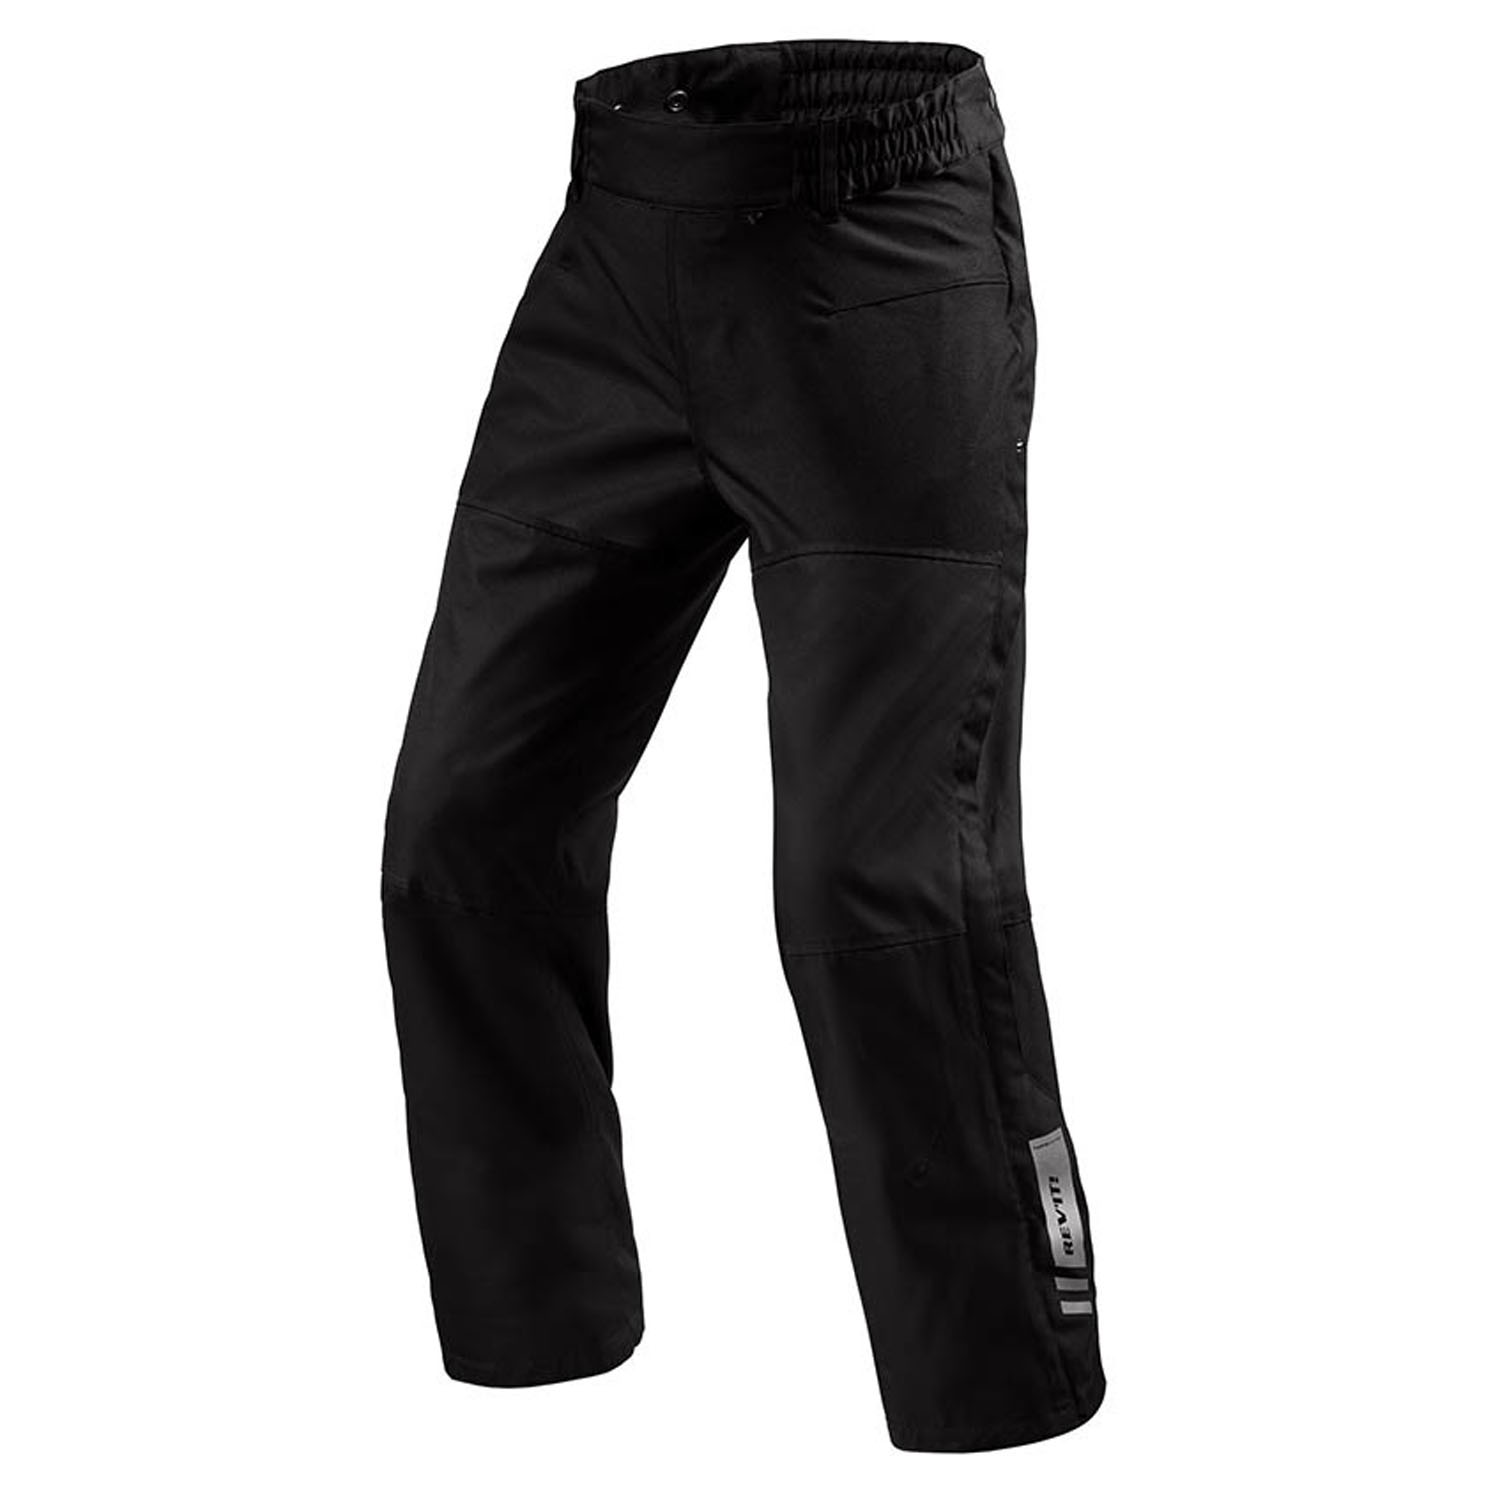 Image of REV'IT! Pants Axis 2 H2O Black Standard Motorcycle Pants Größe 4XL